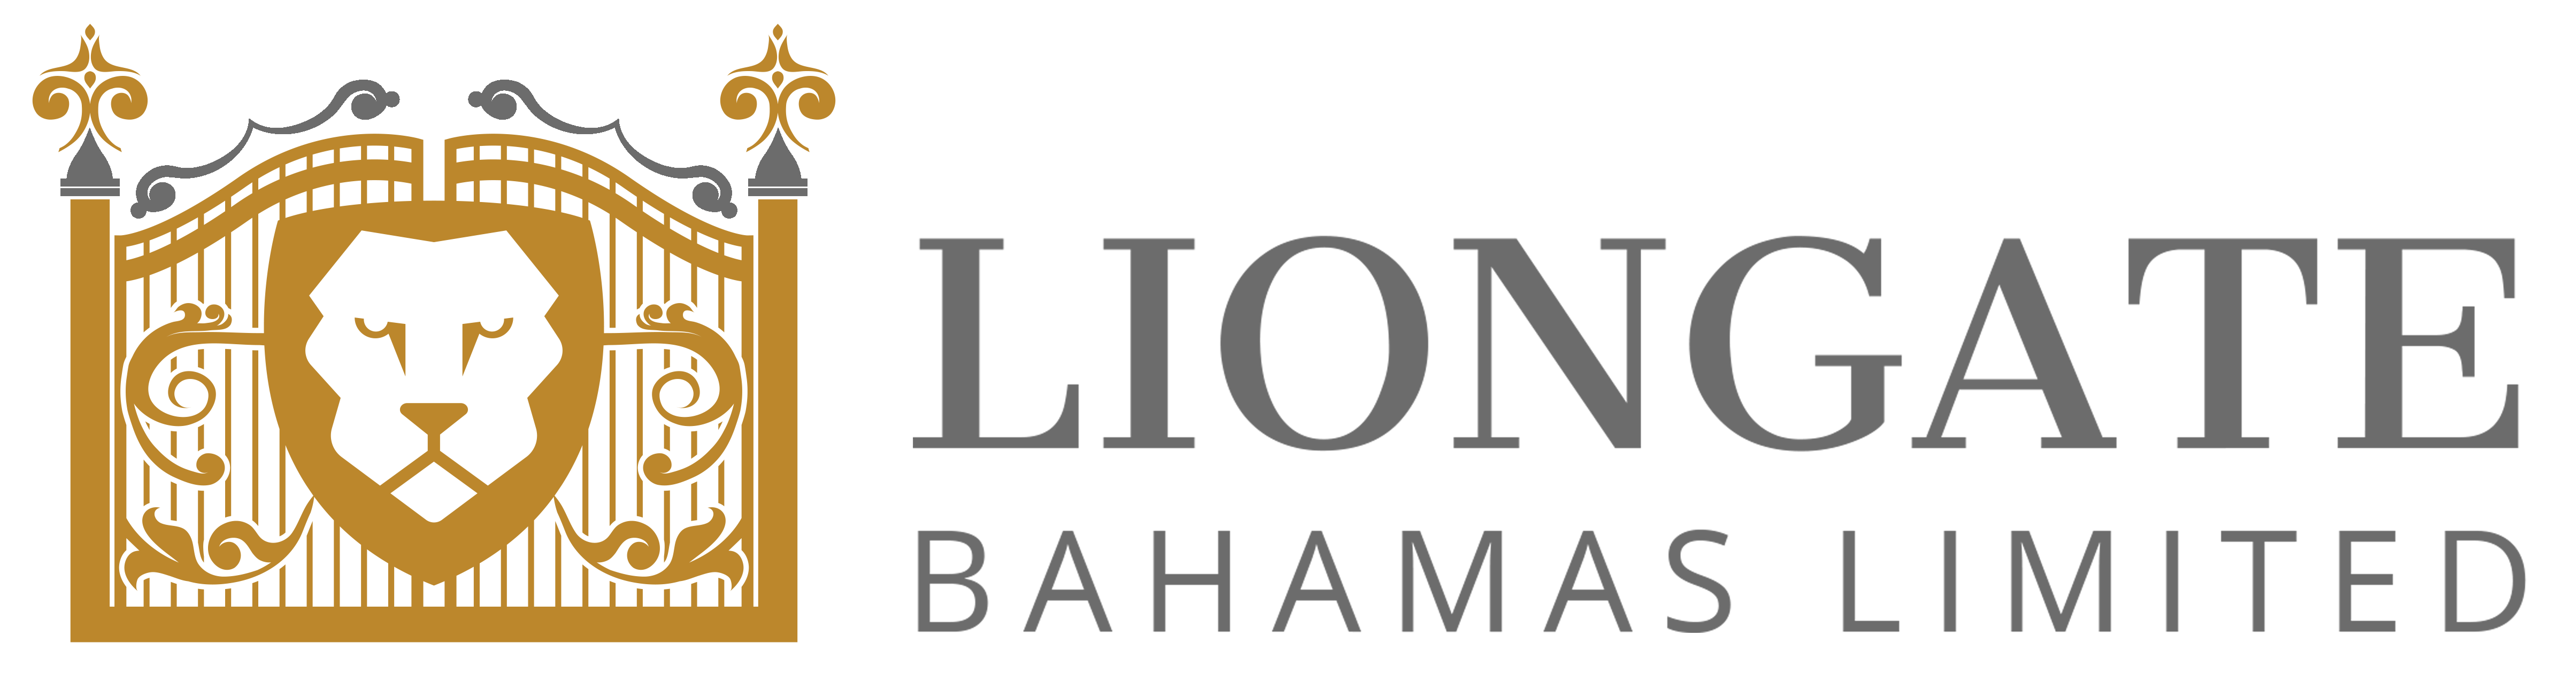 Liongate Bahamas Limited